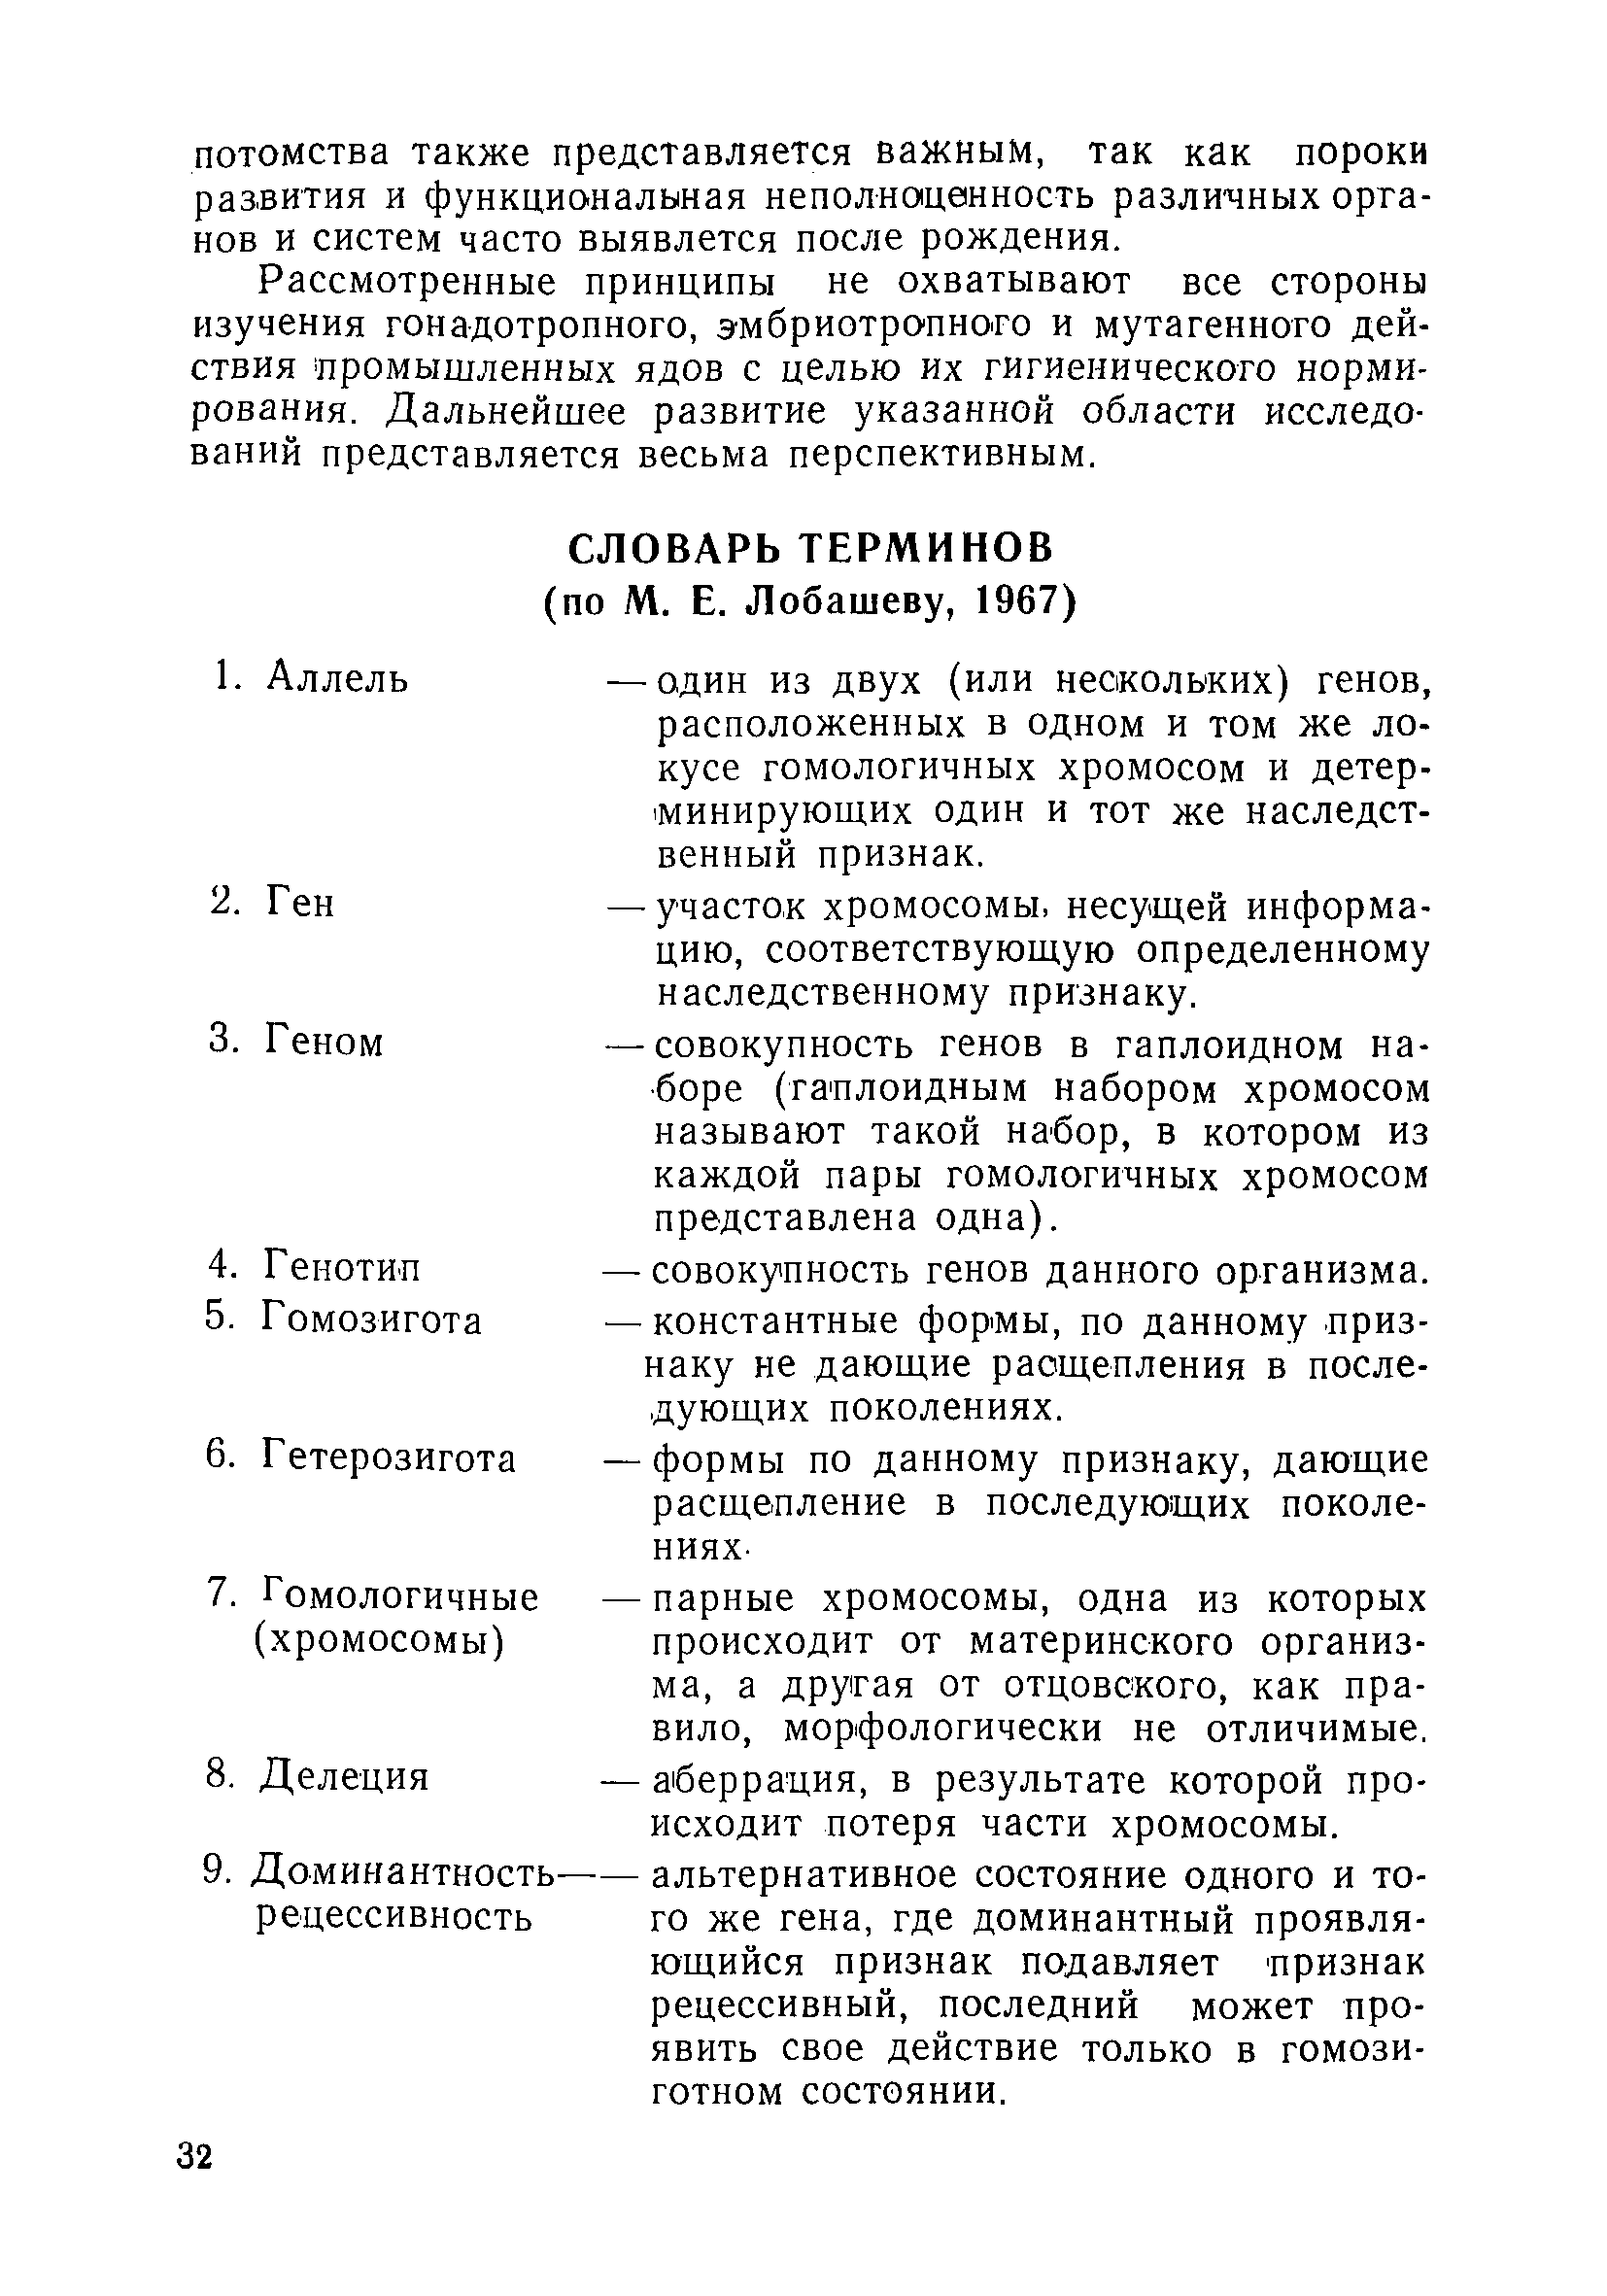 Методические рекомендации 1744-77